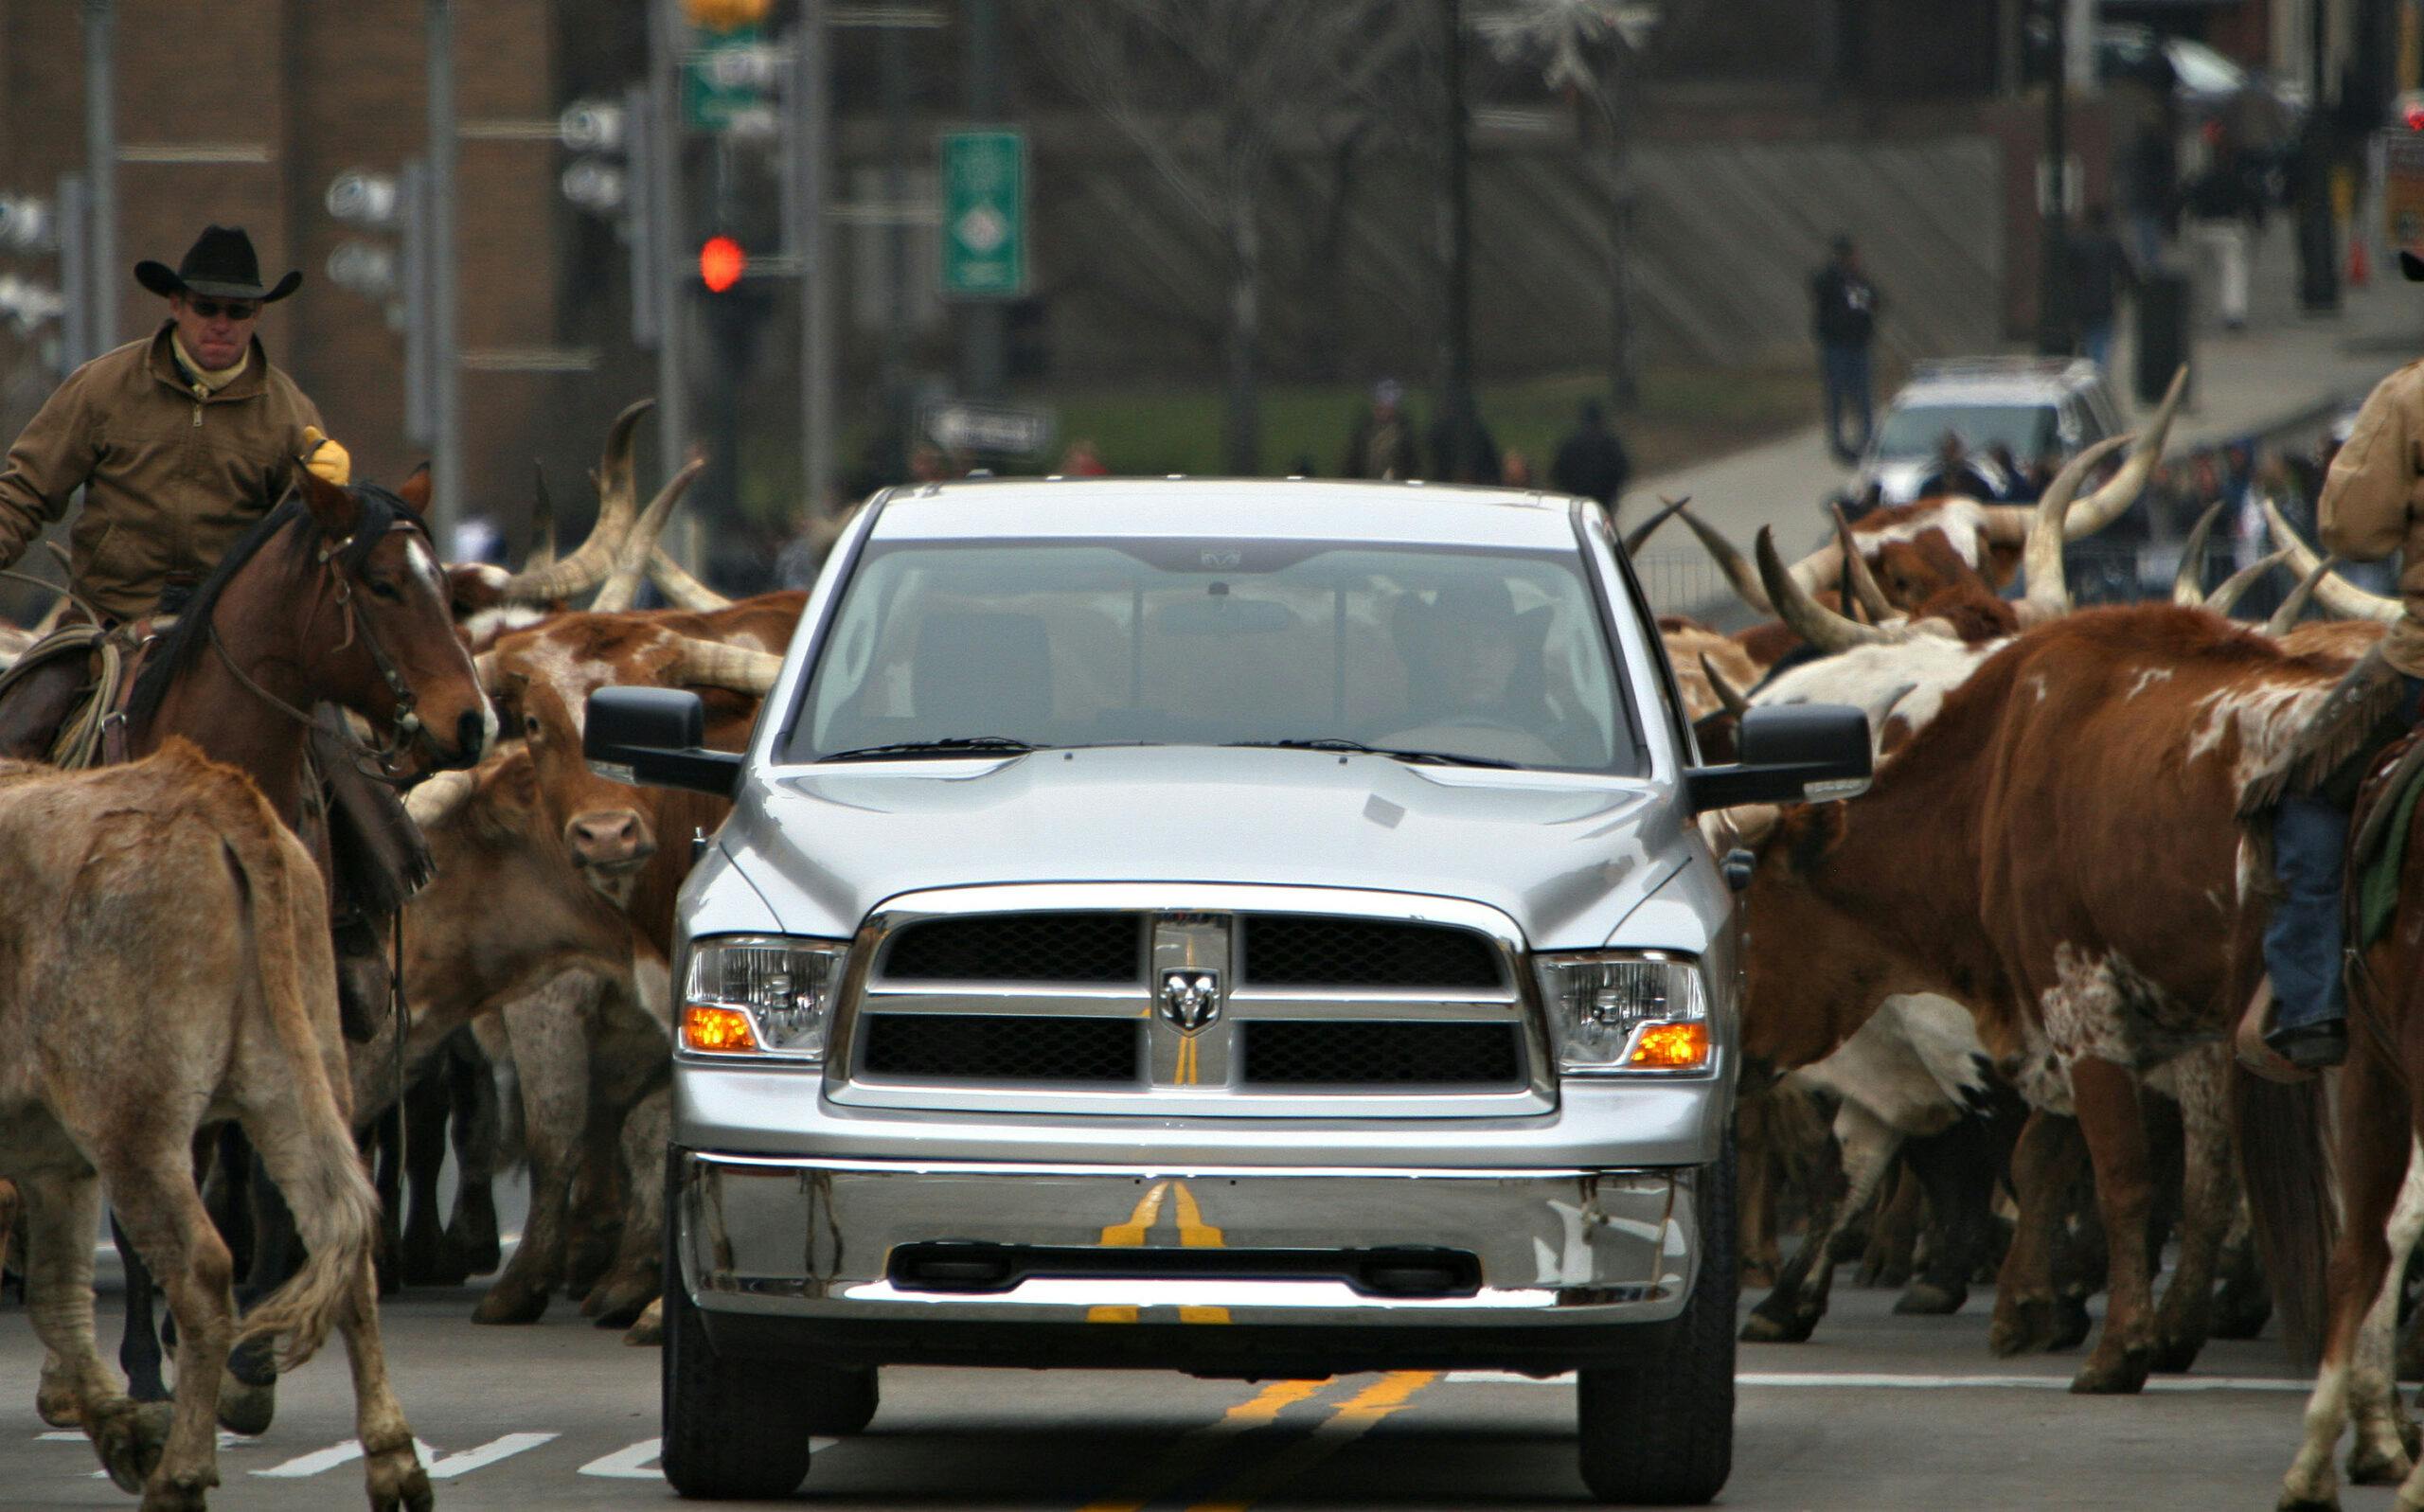 2008 Dodge Ram pickup longhorn cattle detroit auto show debut